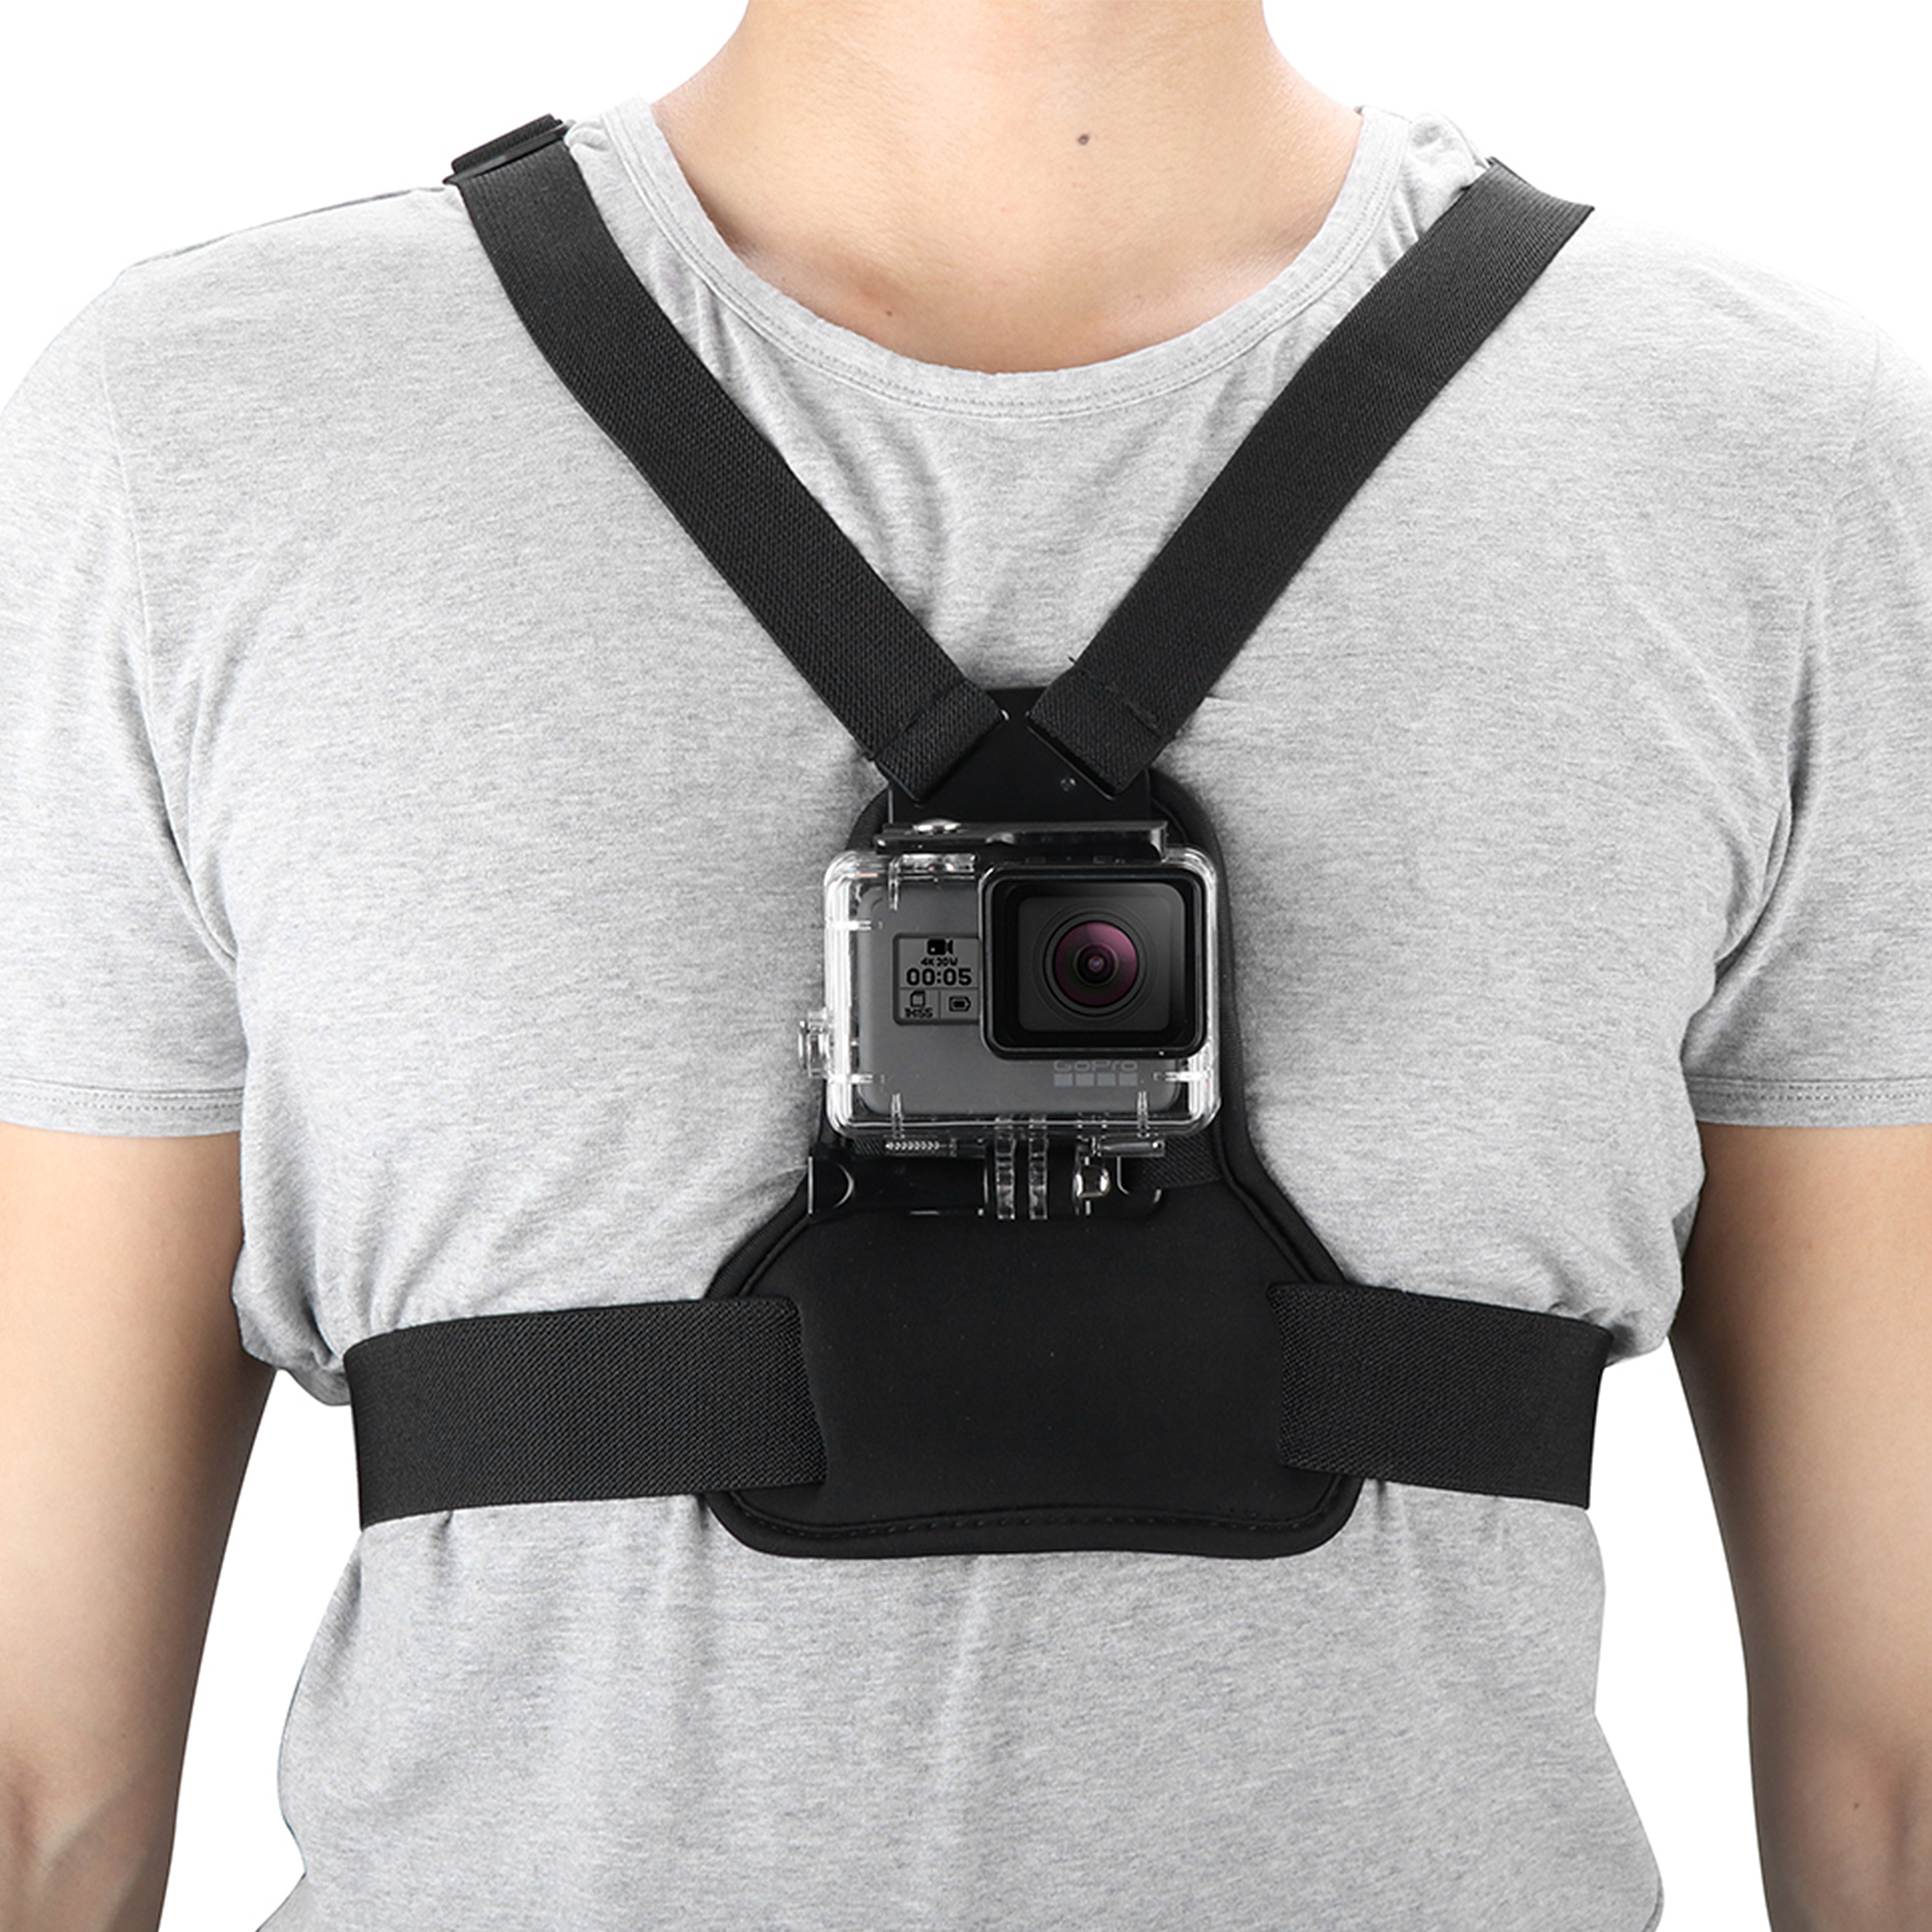 ayex Brustgurt-Halterung Chest Mount Harness für GoPro Kamera Sportaufnahmen